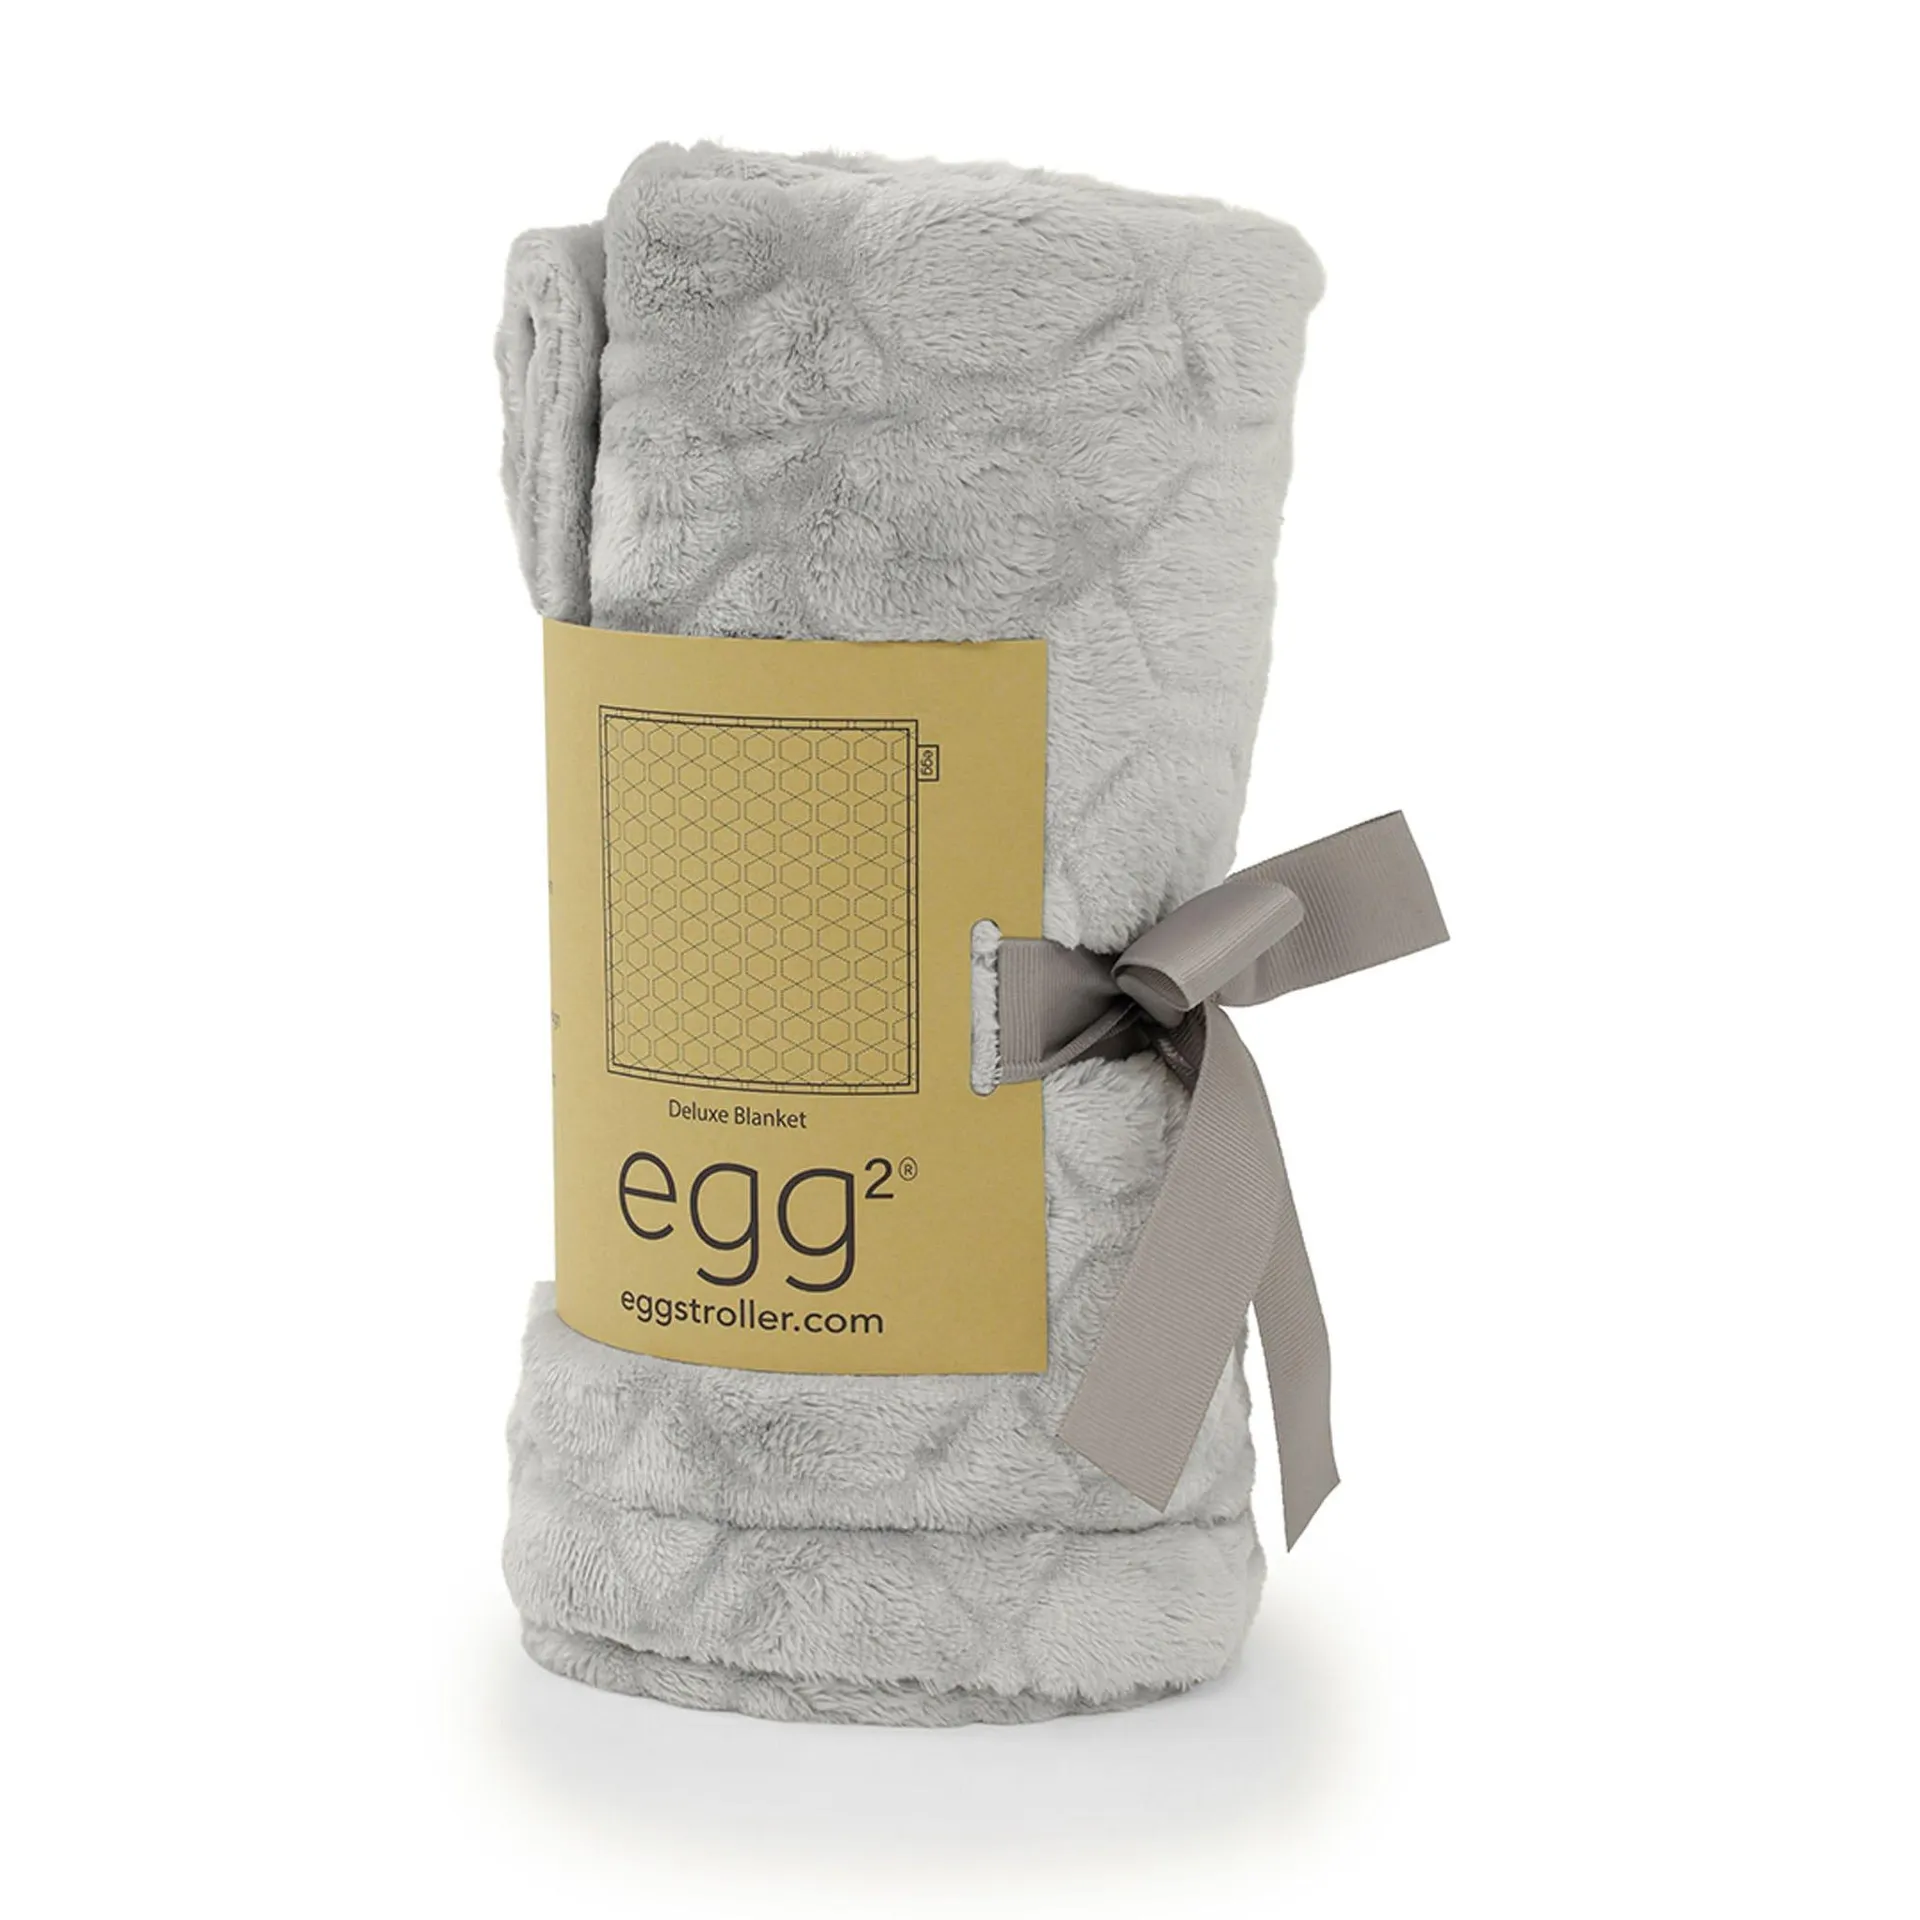 egg2 Deluxe Blanket in Grey